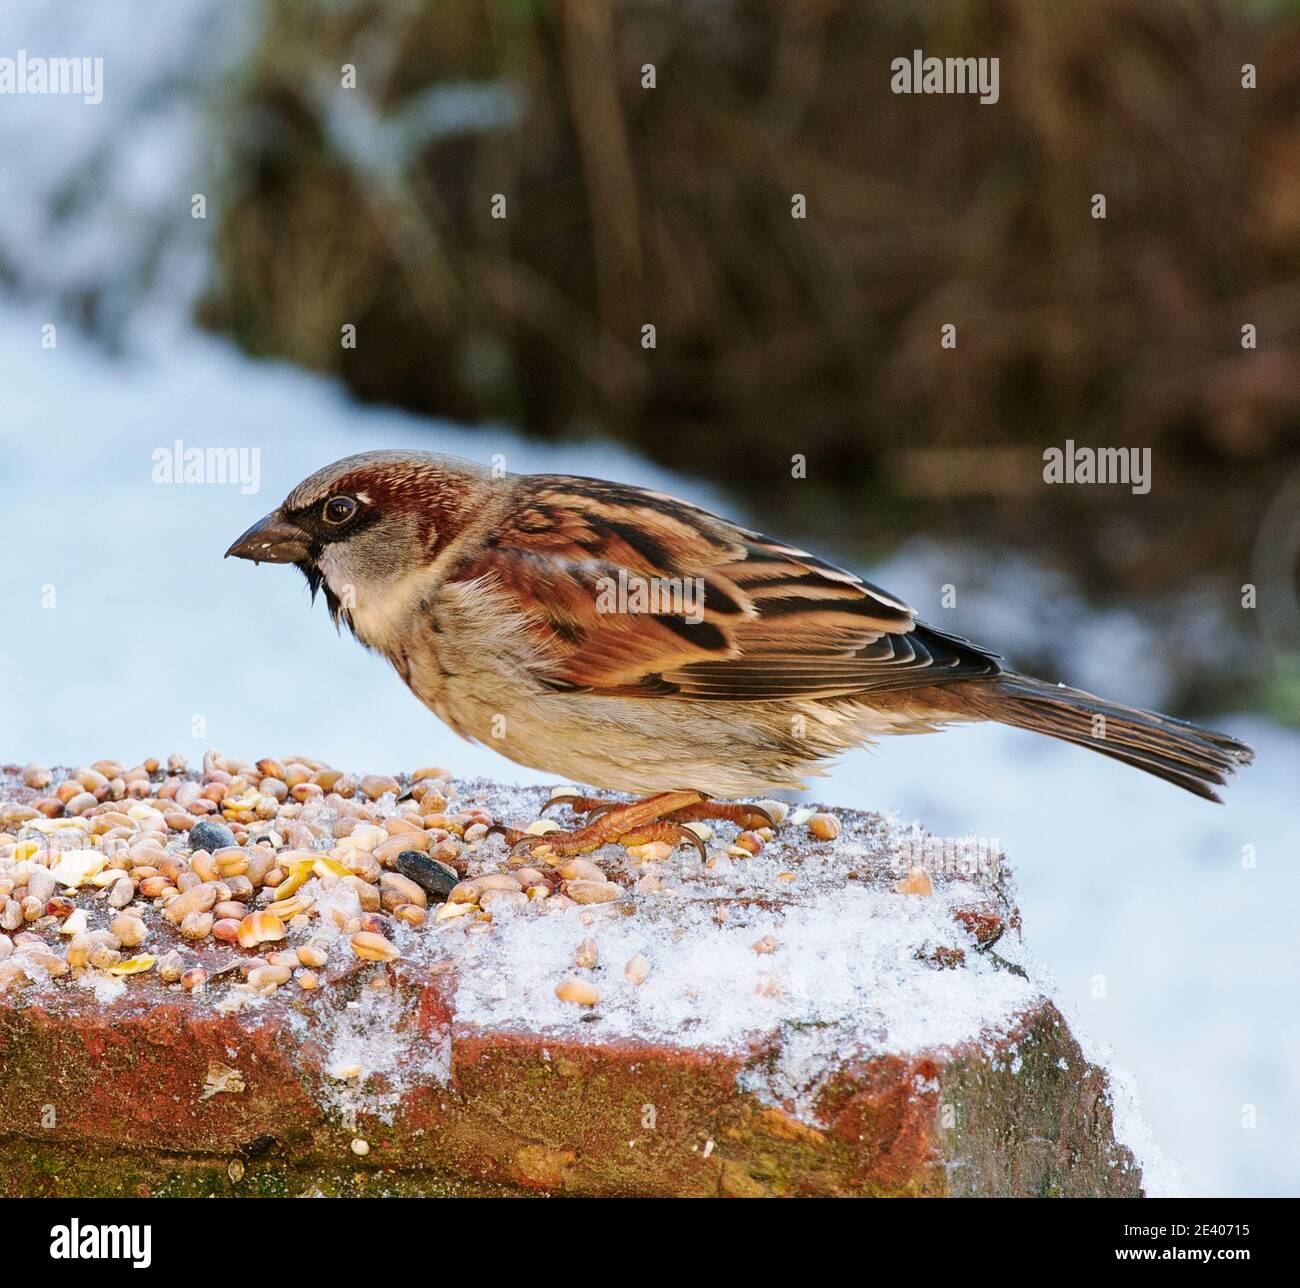 Las aves del jardín dependen de la alimentación de aves durante los inviernos duros en el REINO UNIDO Foto de stock